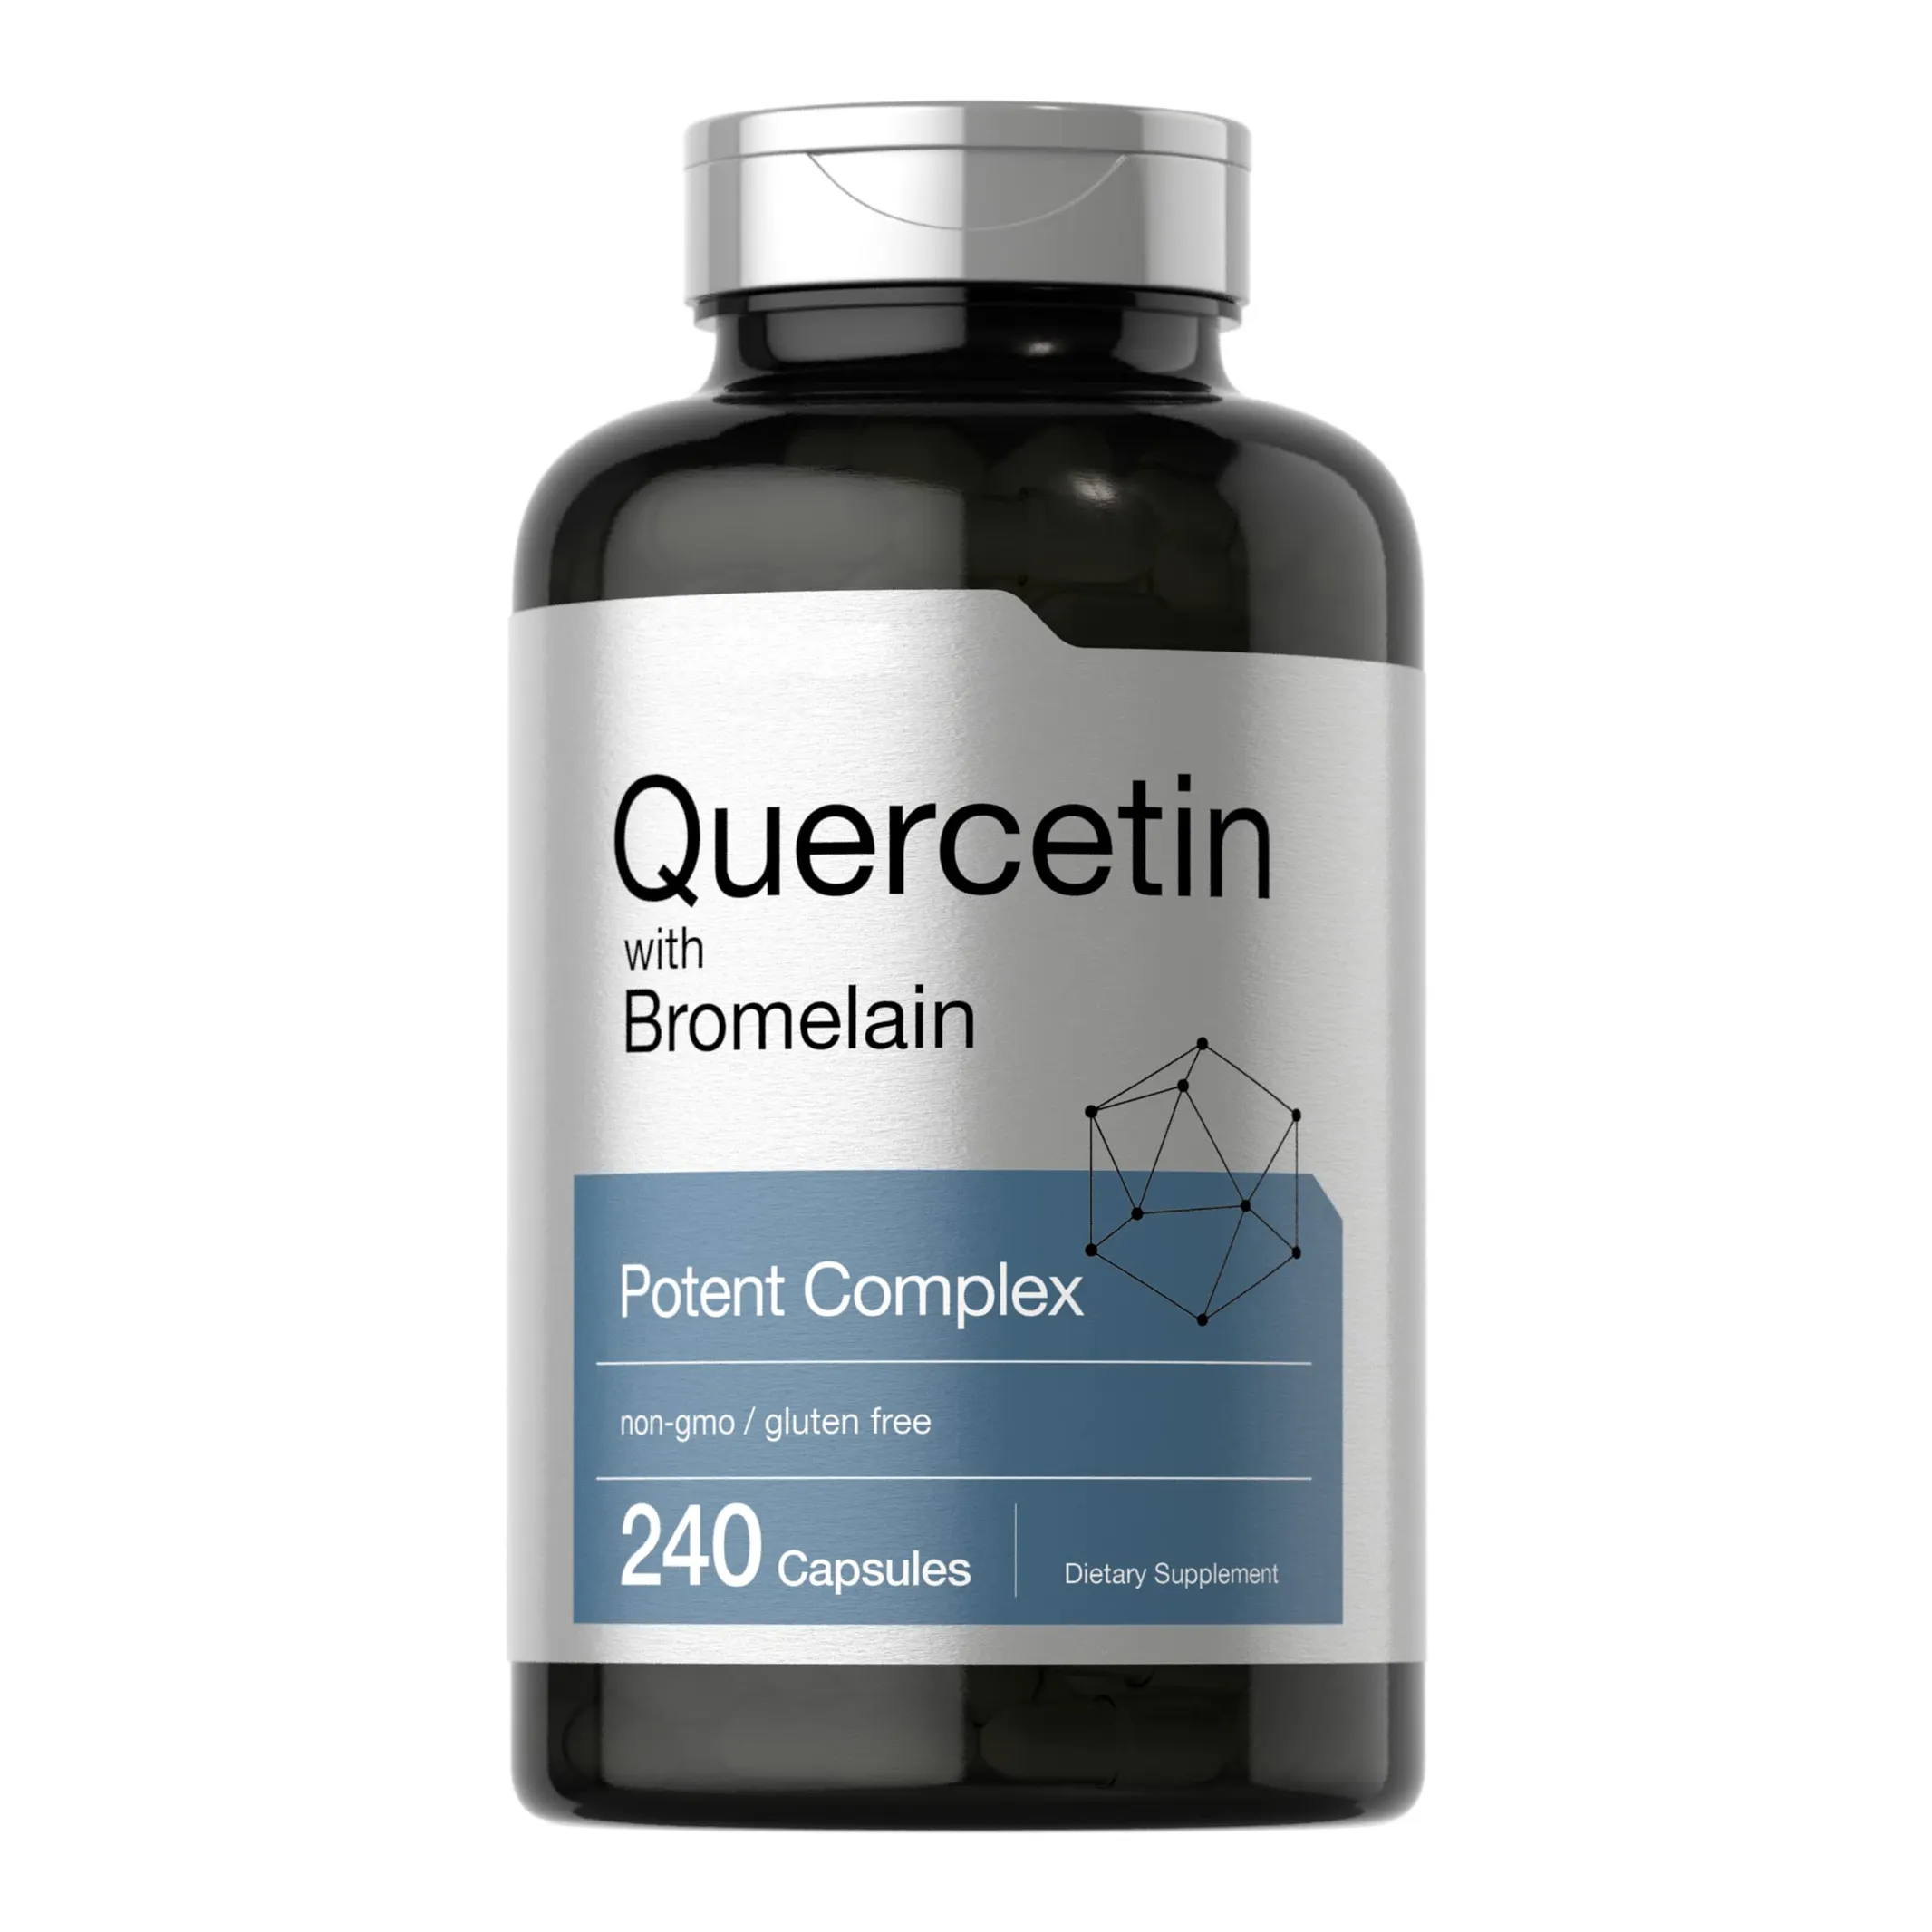 Nicht-GMO und glutenfreie Quercetin-Kapseln mit Bromelain-Supplement